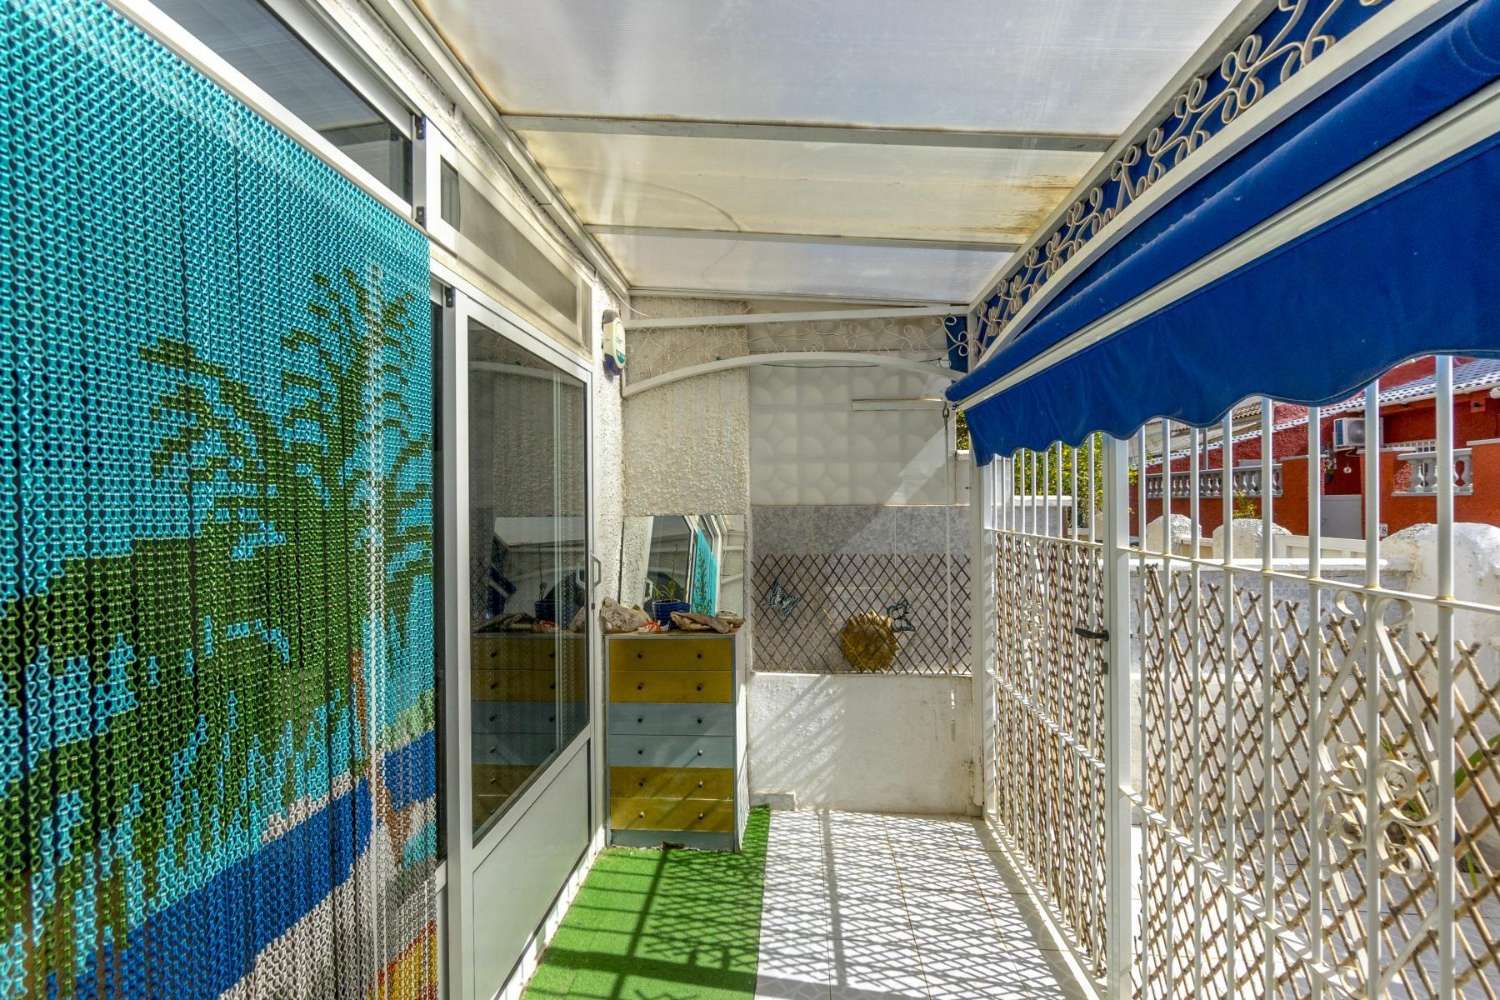 TORREVIEJA El Limonar, Encantadora casa adosada de 2 dormitorios, reformada, con piscina comunitaria